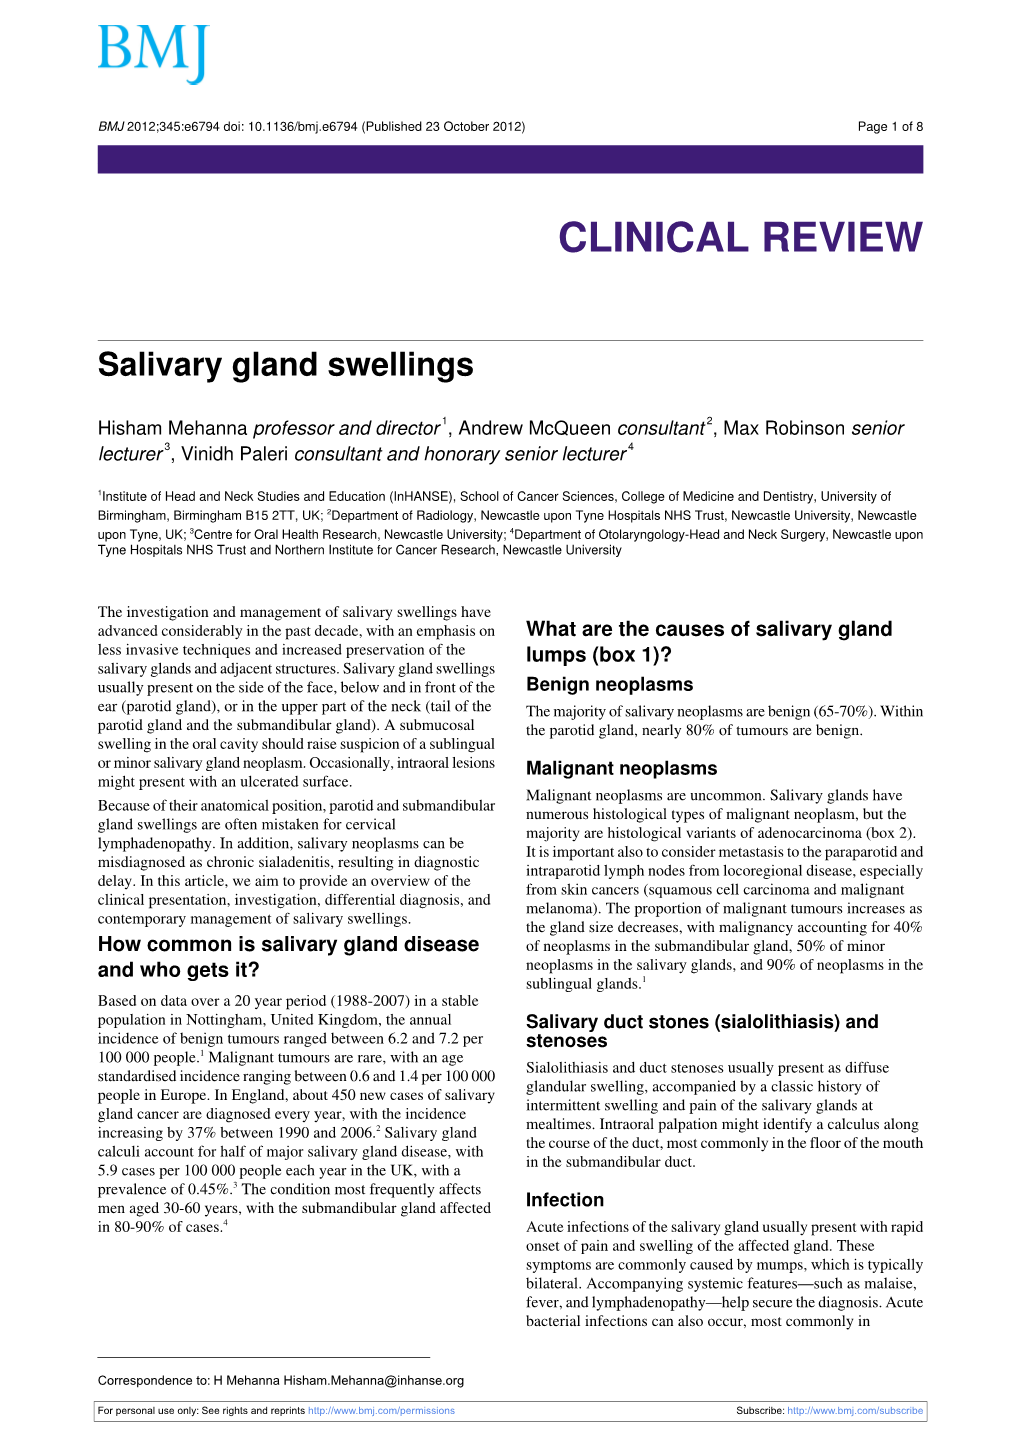 Salivary Gland Swellings